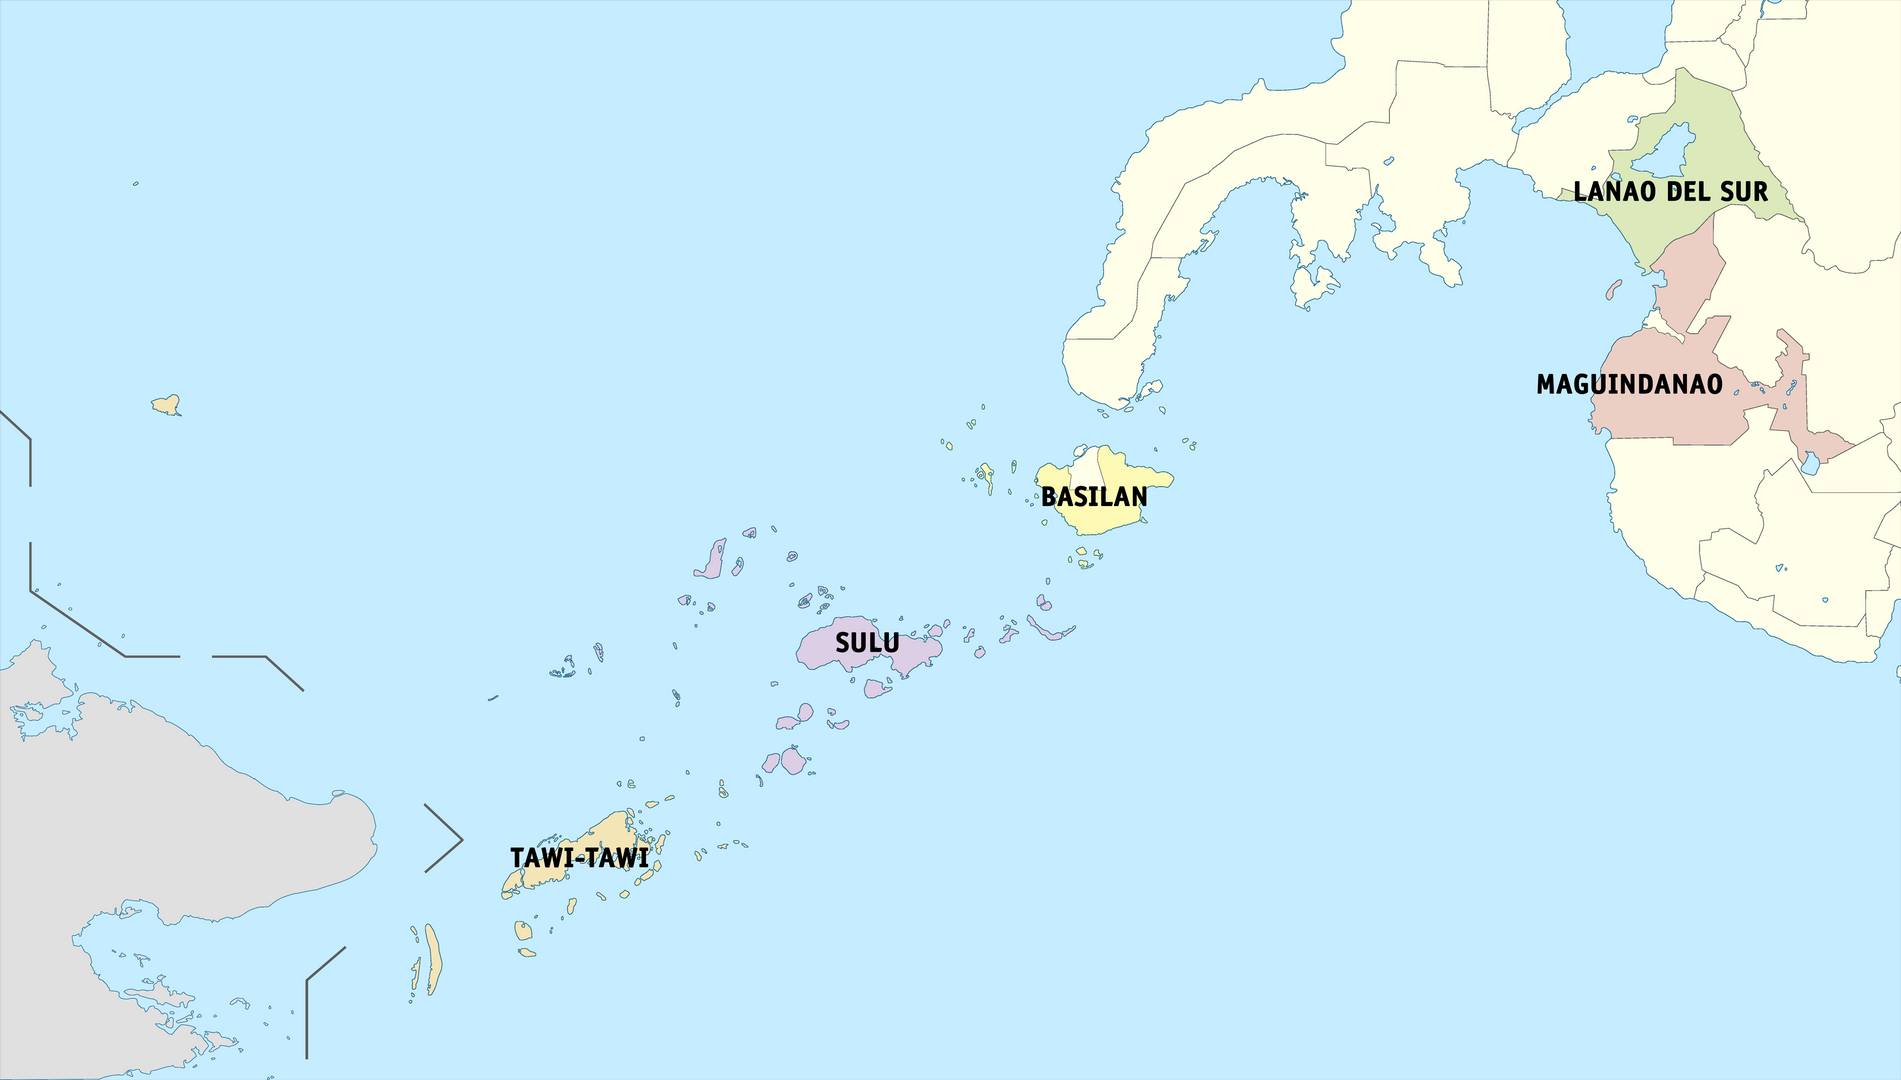 Провинции Автономного региона в Мусульманском Минданао (Бангсаморо)